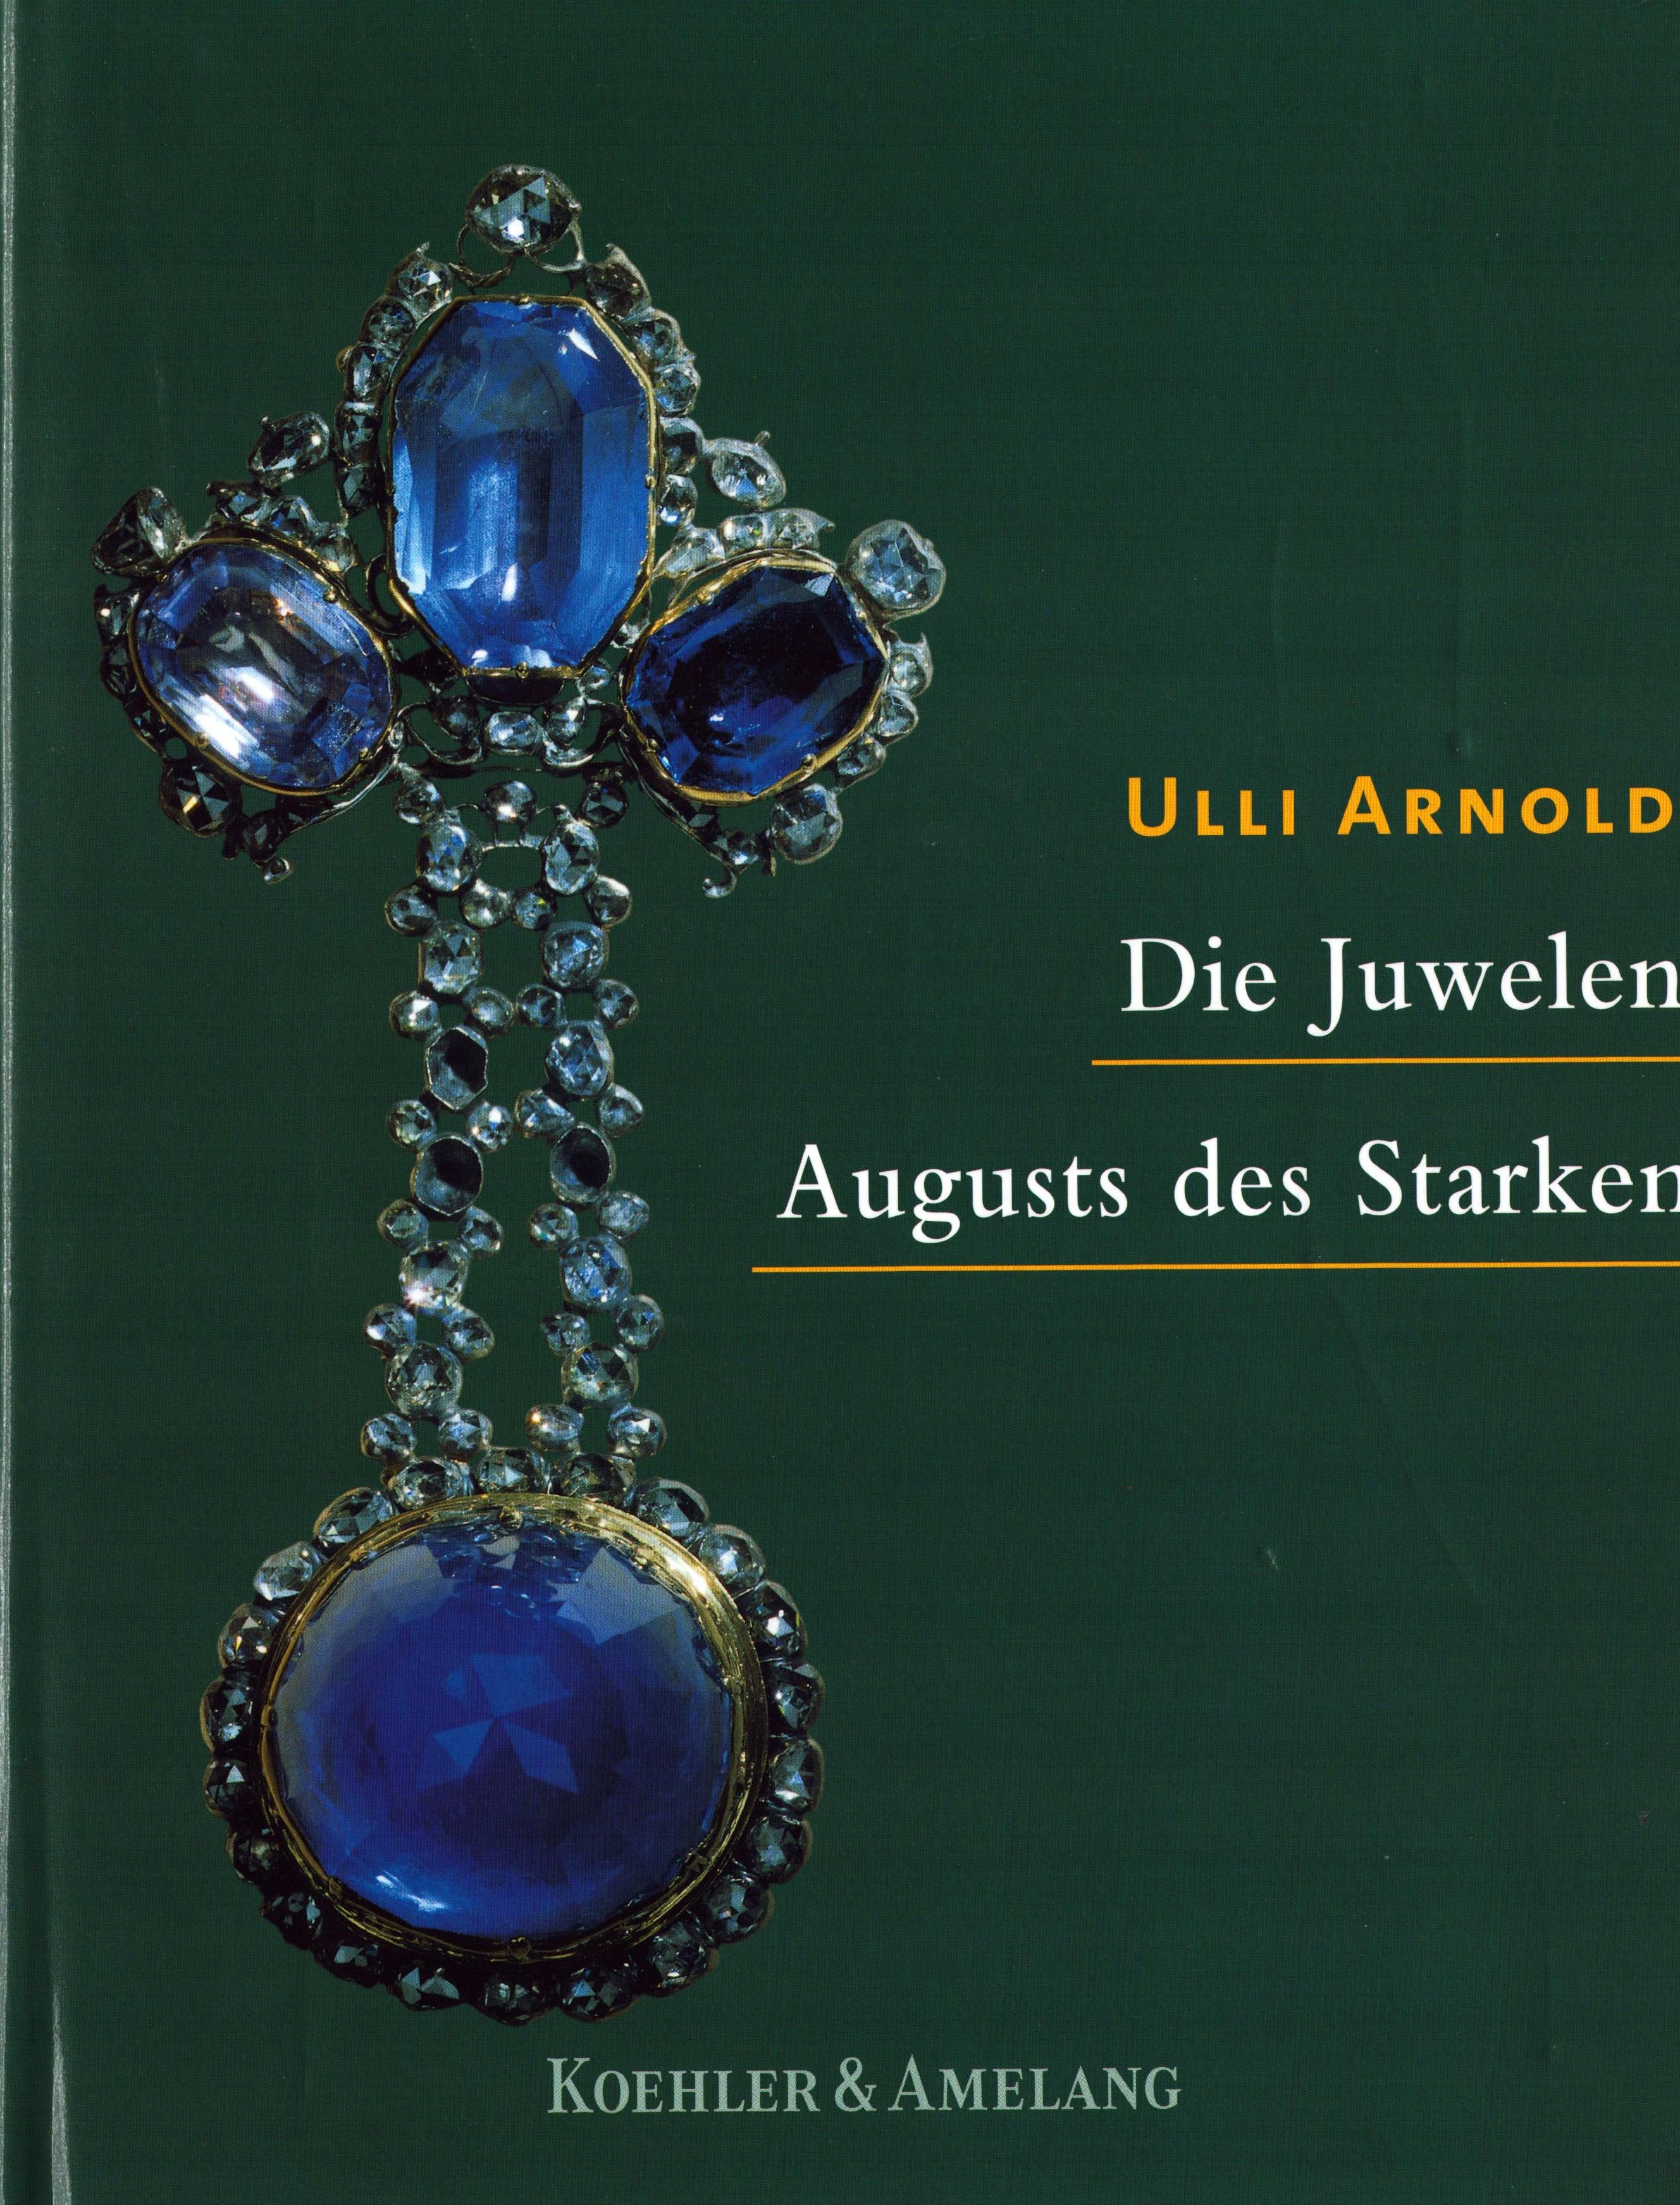 Die Juwelen Augusts des Starken (Archiv SAXONIA-FREIBERG-STIFTUNG CC BY-NC-SA)